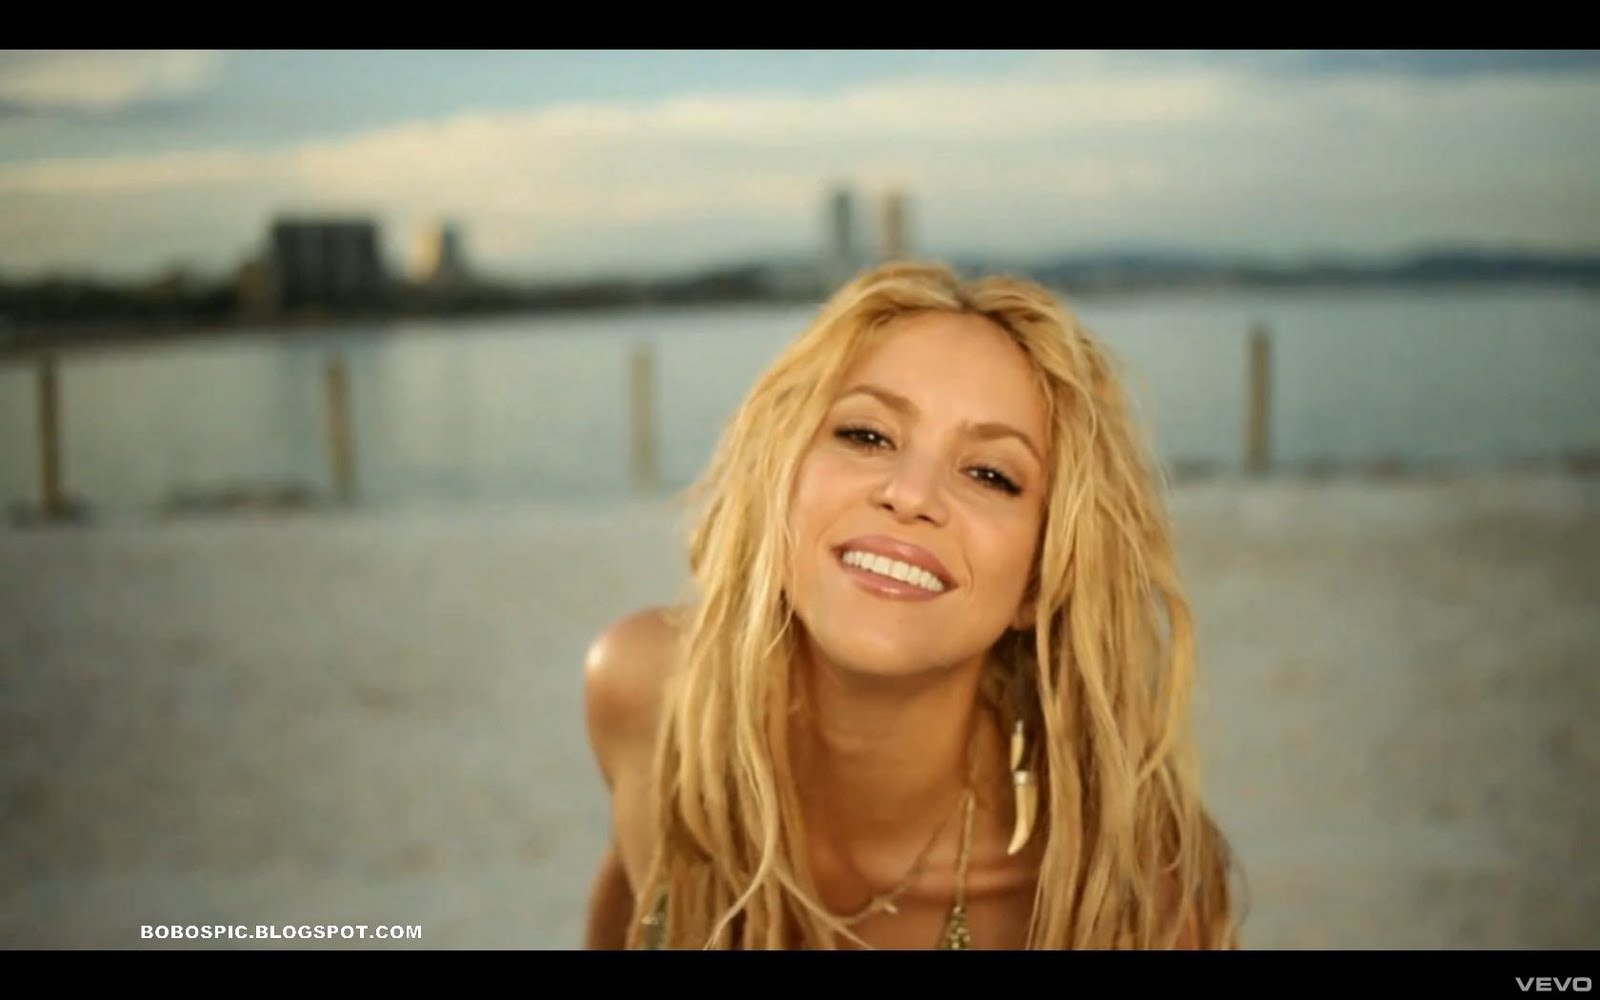 Music Video Pics: Shakira - Loca (Spanish Version) ft. El Cata video pictures1600 x 1000